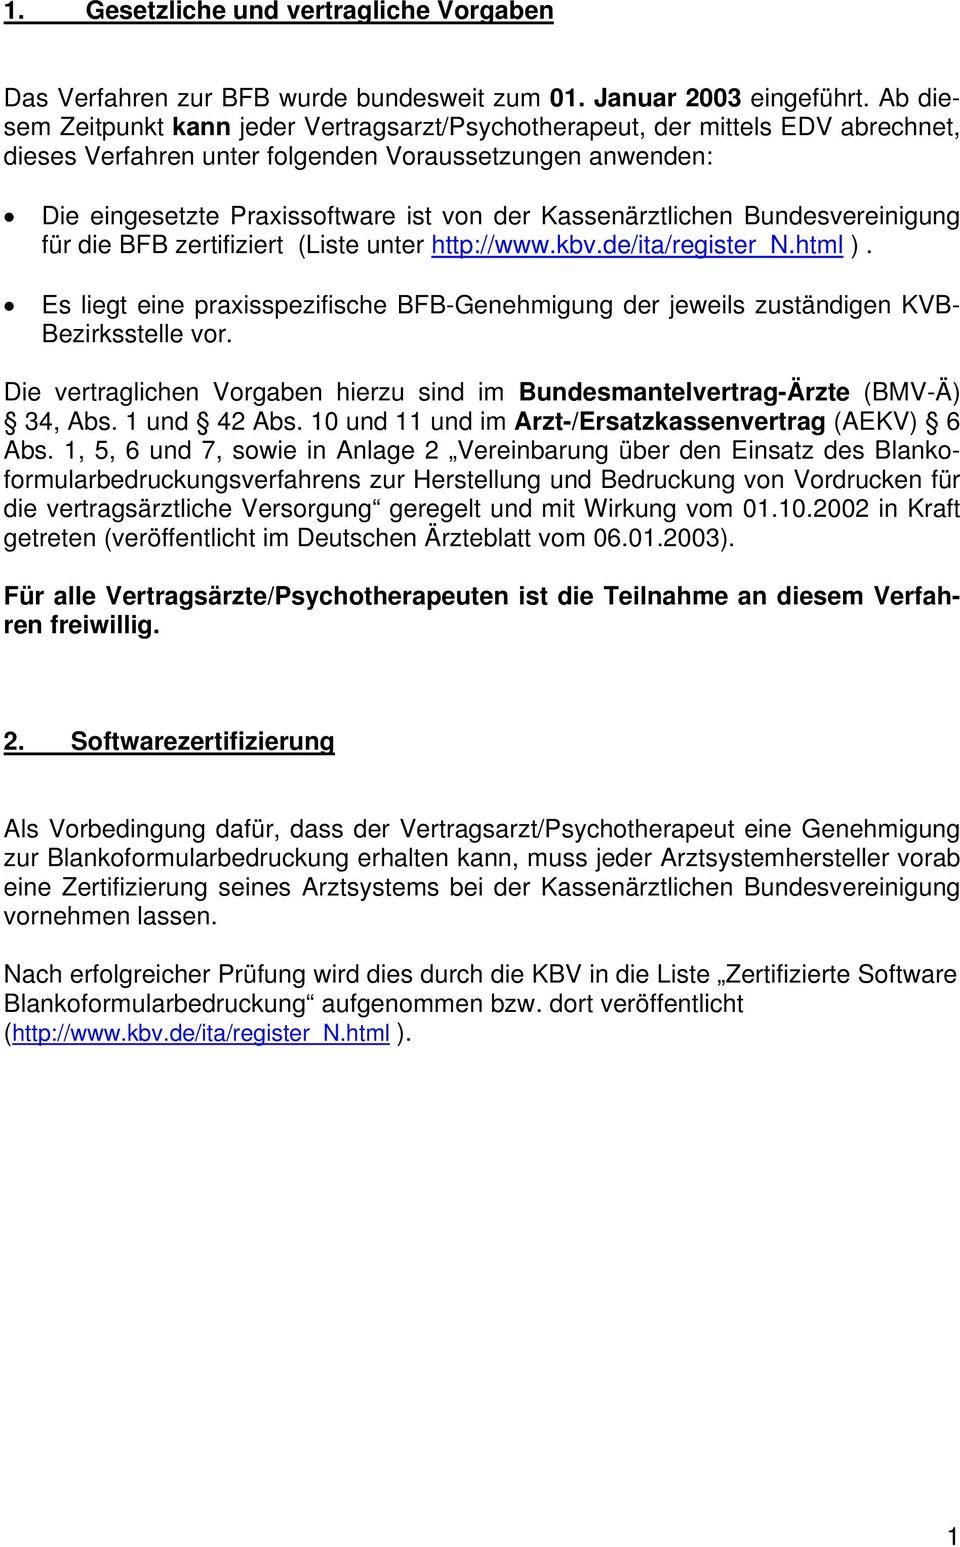 Kassenärztlichen Bundesvereinigung für die BFB zertifiziert (Liste unter http://www.kbv.de/ita/register_n.html ).